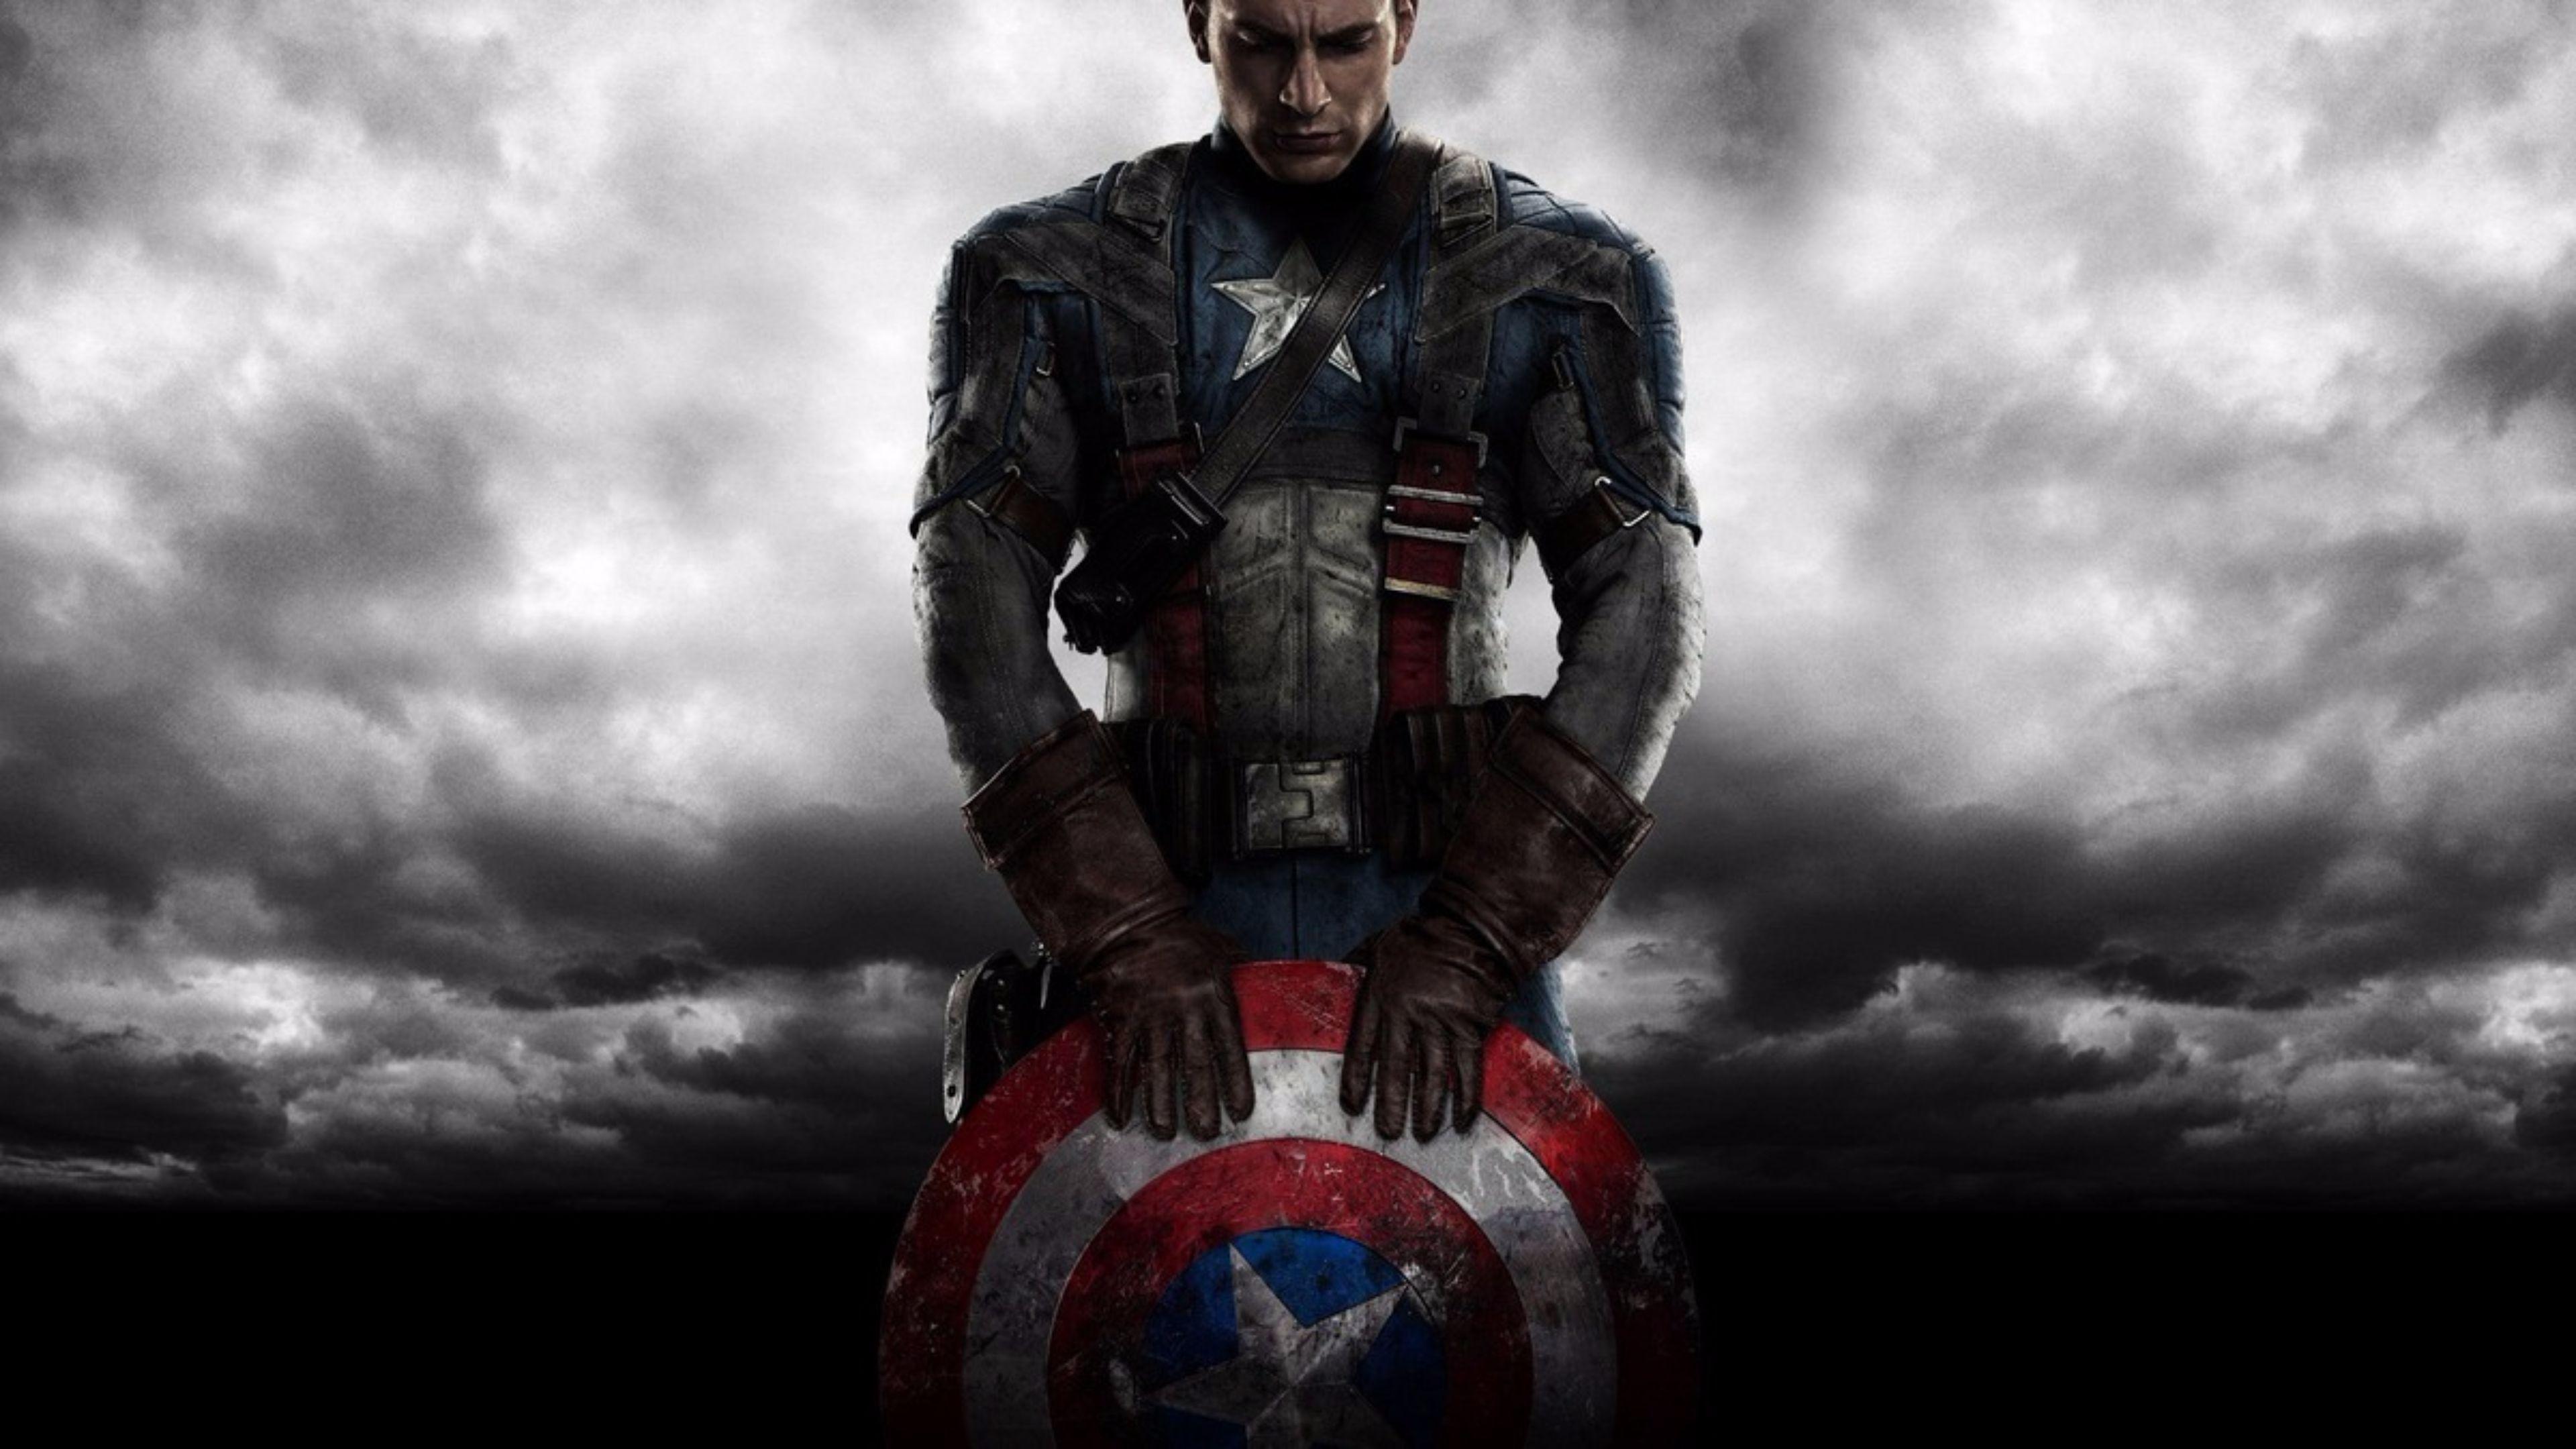 Creative Captain America Civil War 4K Wallpaper Image, HD